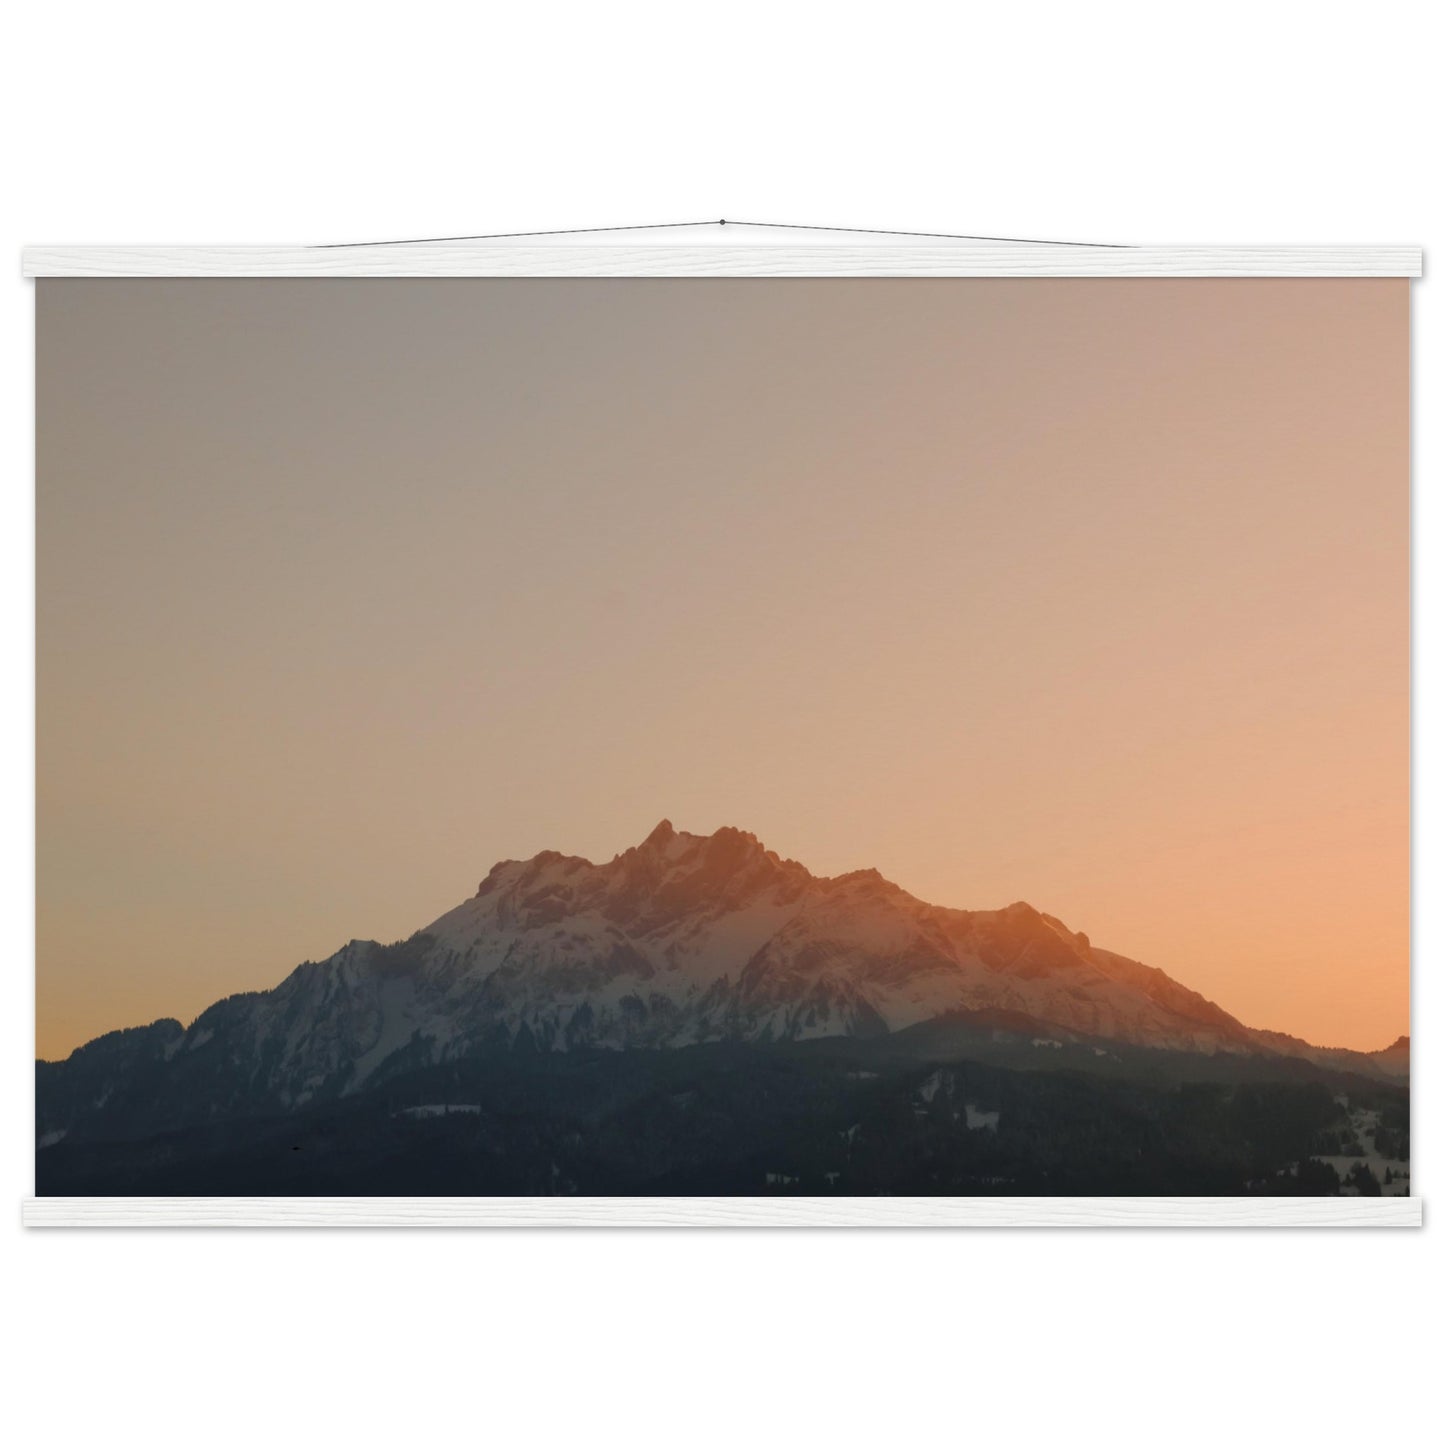 Schweizer Alpenzauber: Pilatus bei Sonnenuntergang - Premium Poster mit Holzeisten